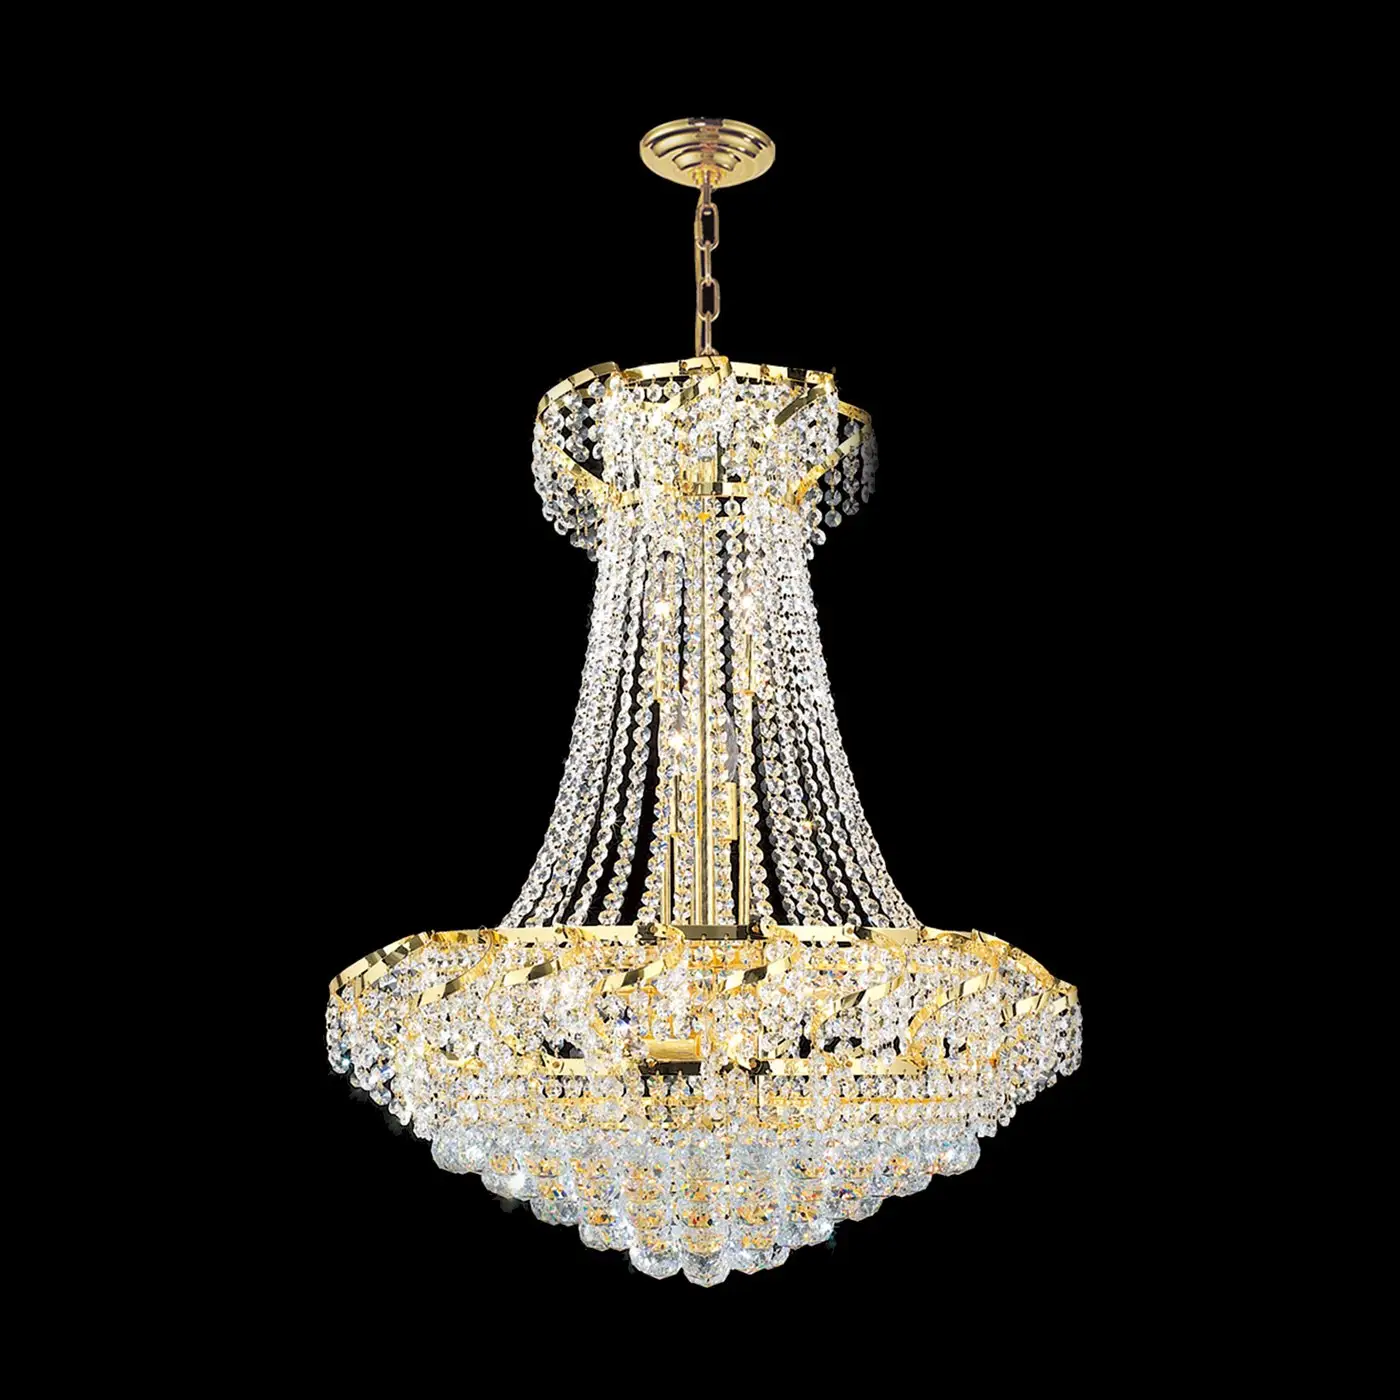 Luxury home decor chandelier pendant light for dinning room bedroom 71049